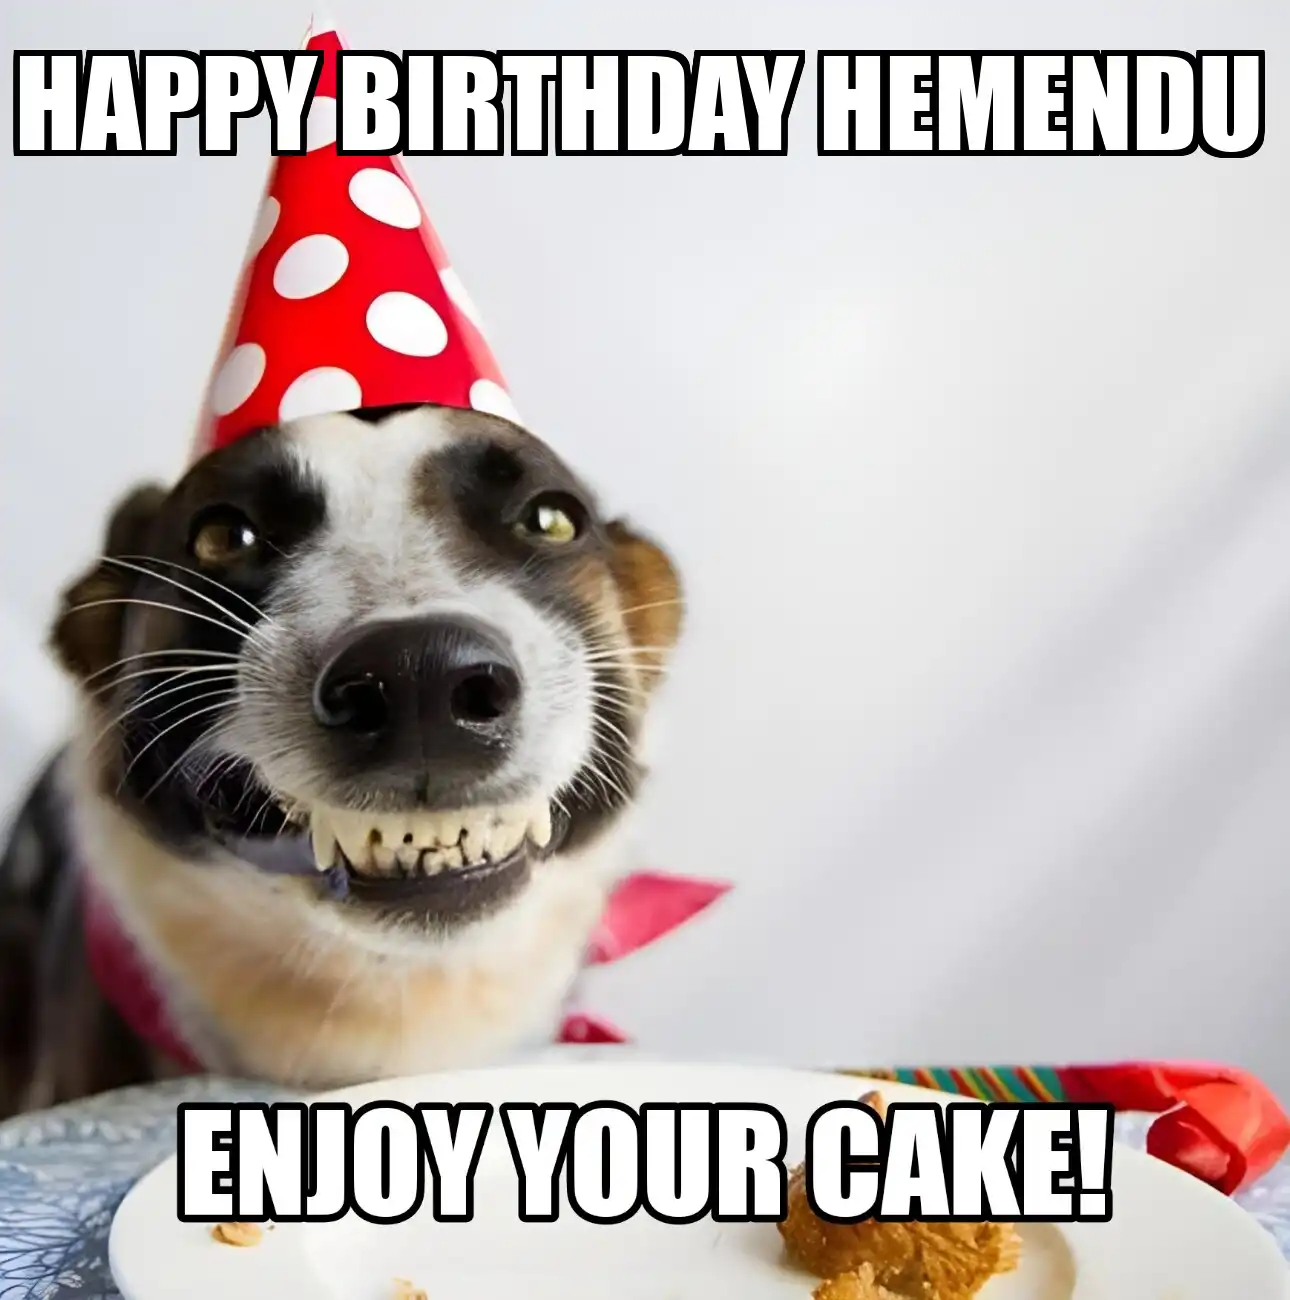 Happy Birthday Hemendu Enjoy Your Cake Dog Meme